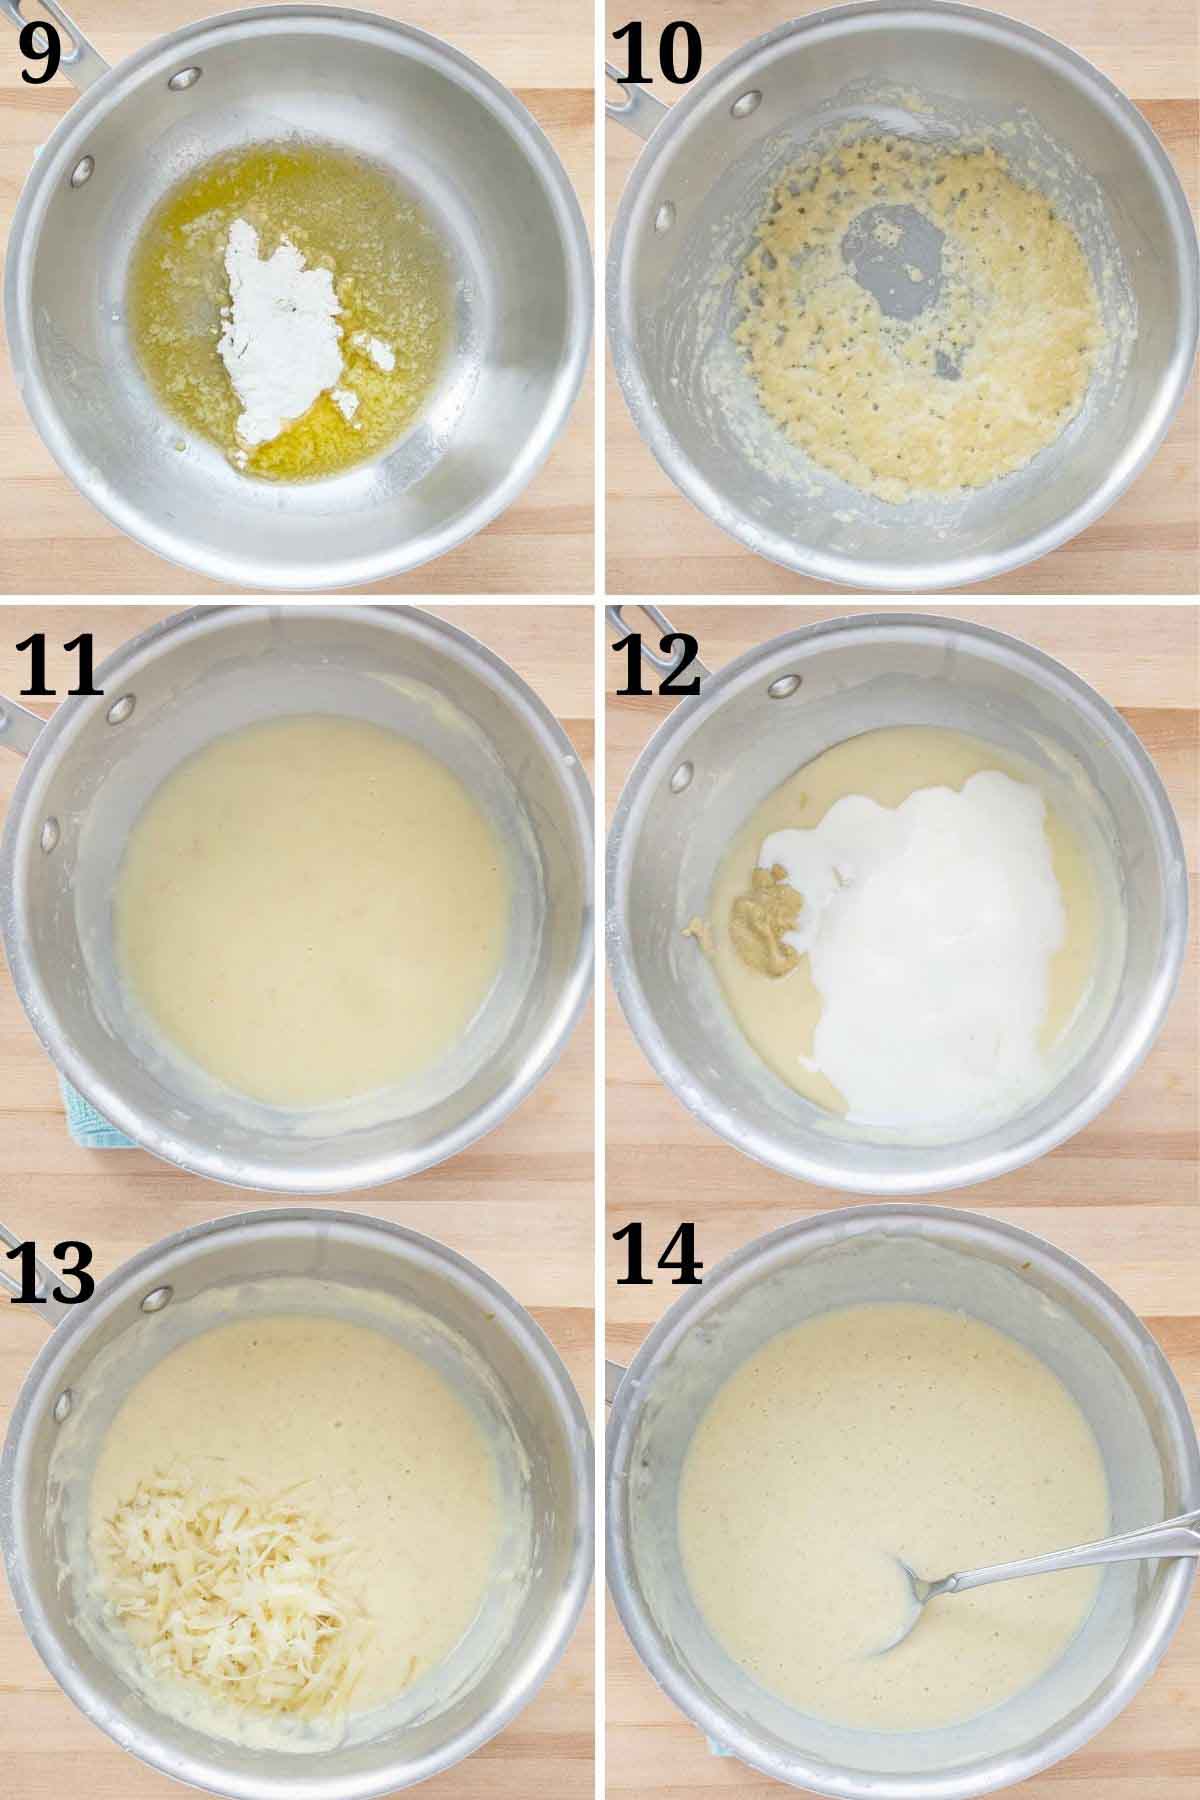 gruyere peynirli dijon sosunun nasıl yapıldığını gösteren altı resim